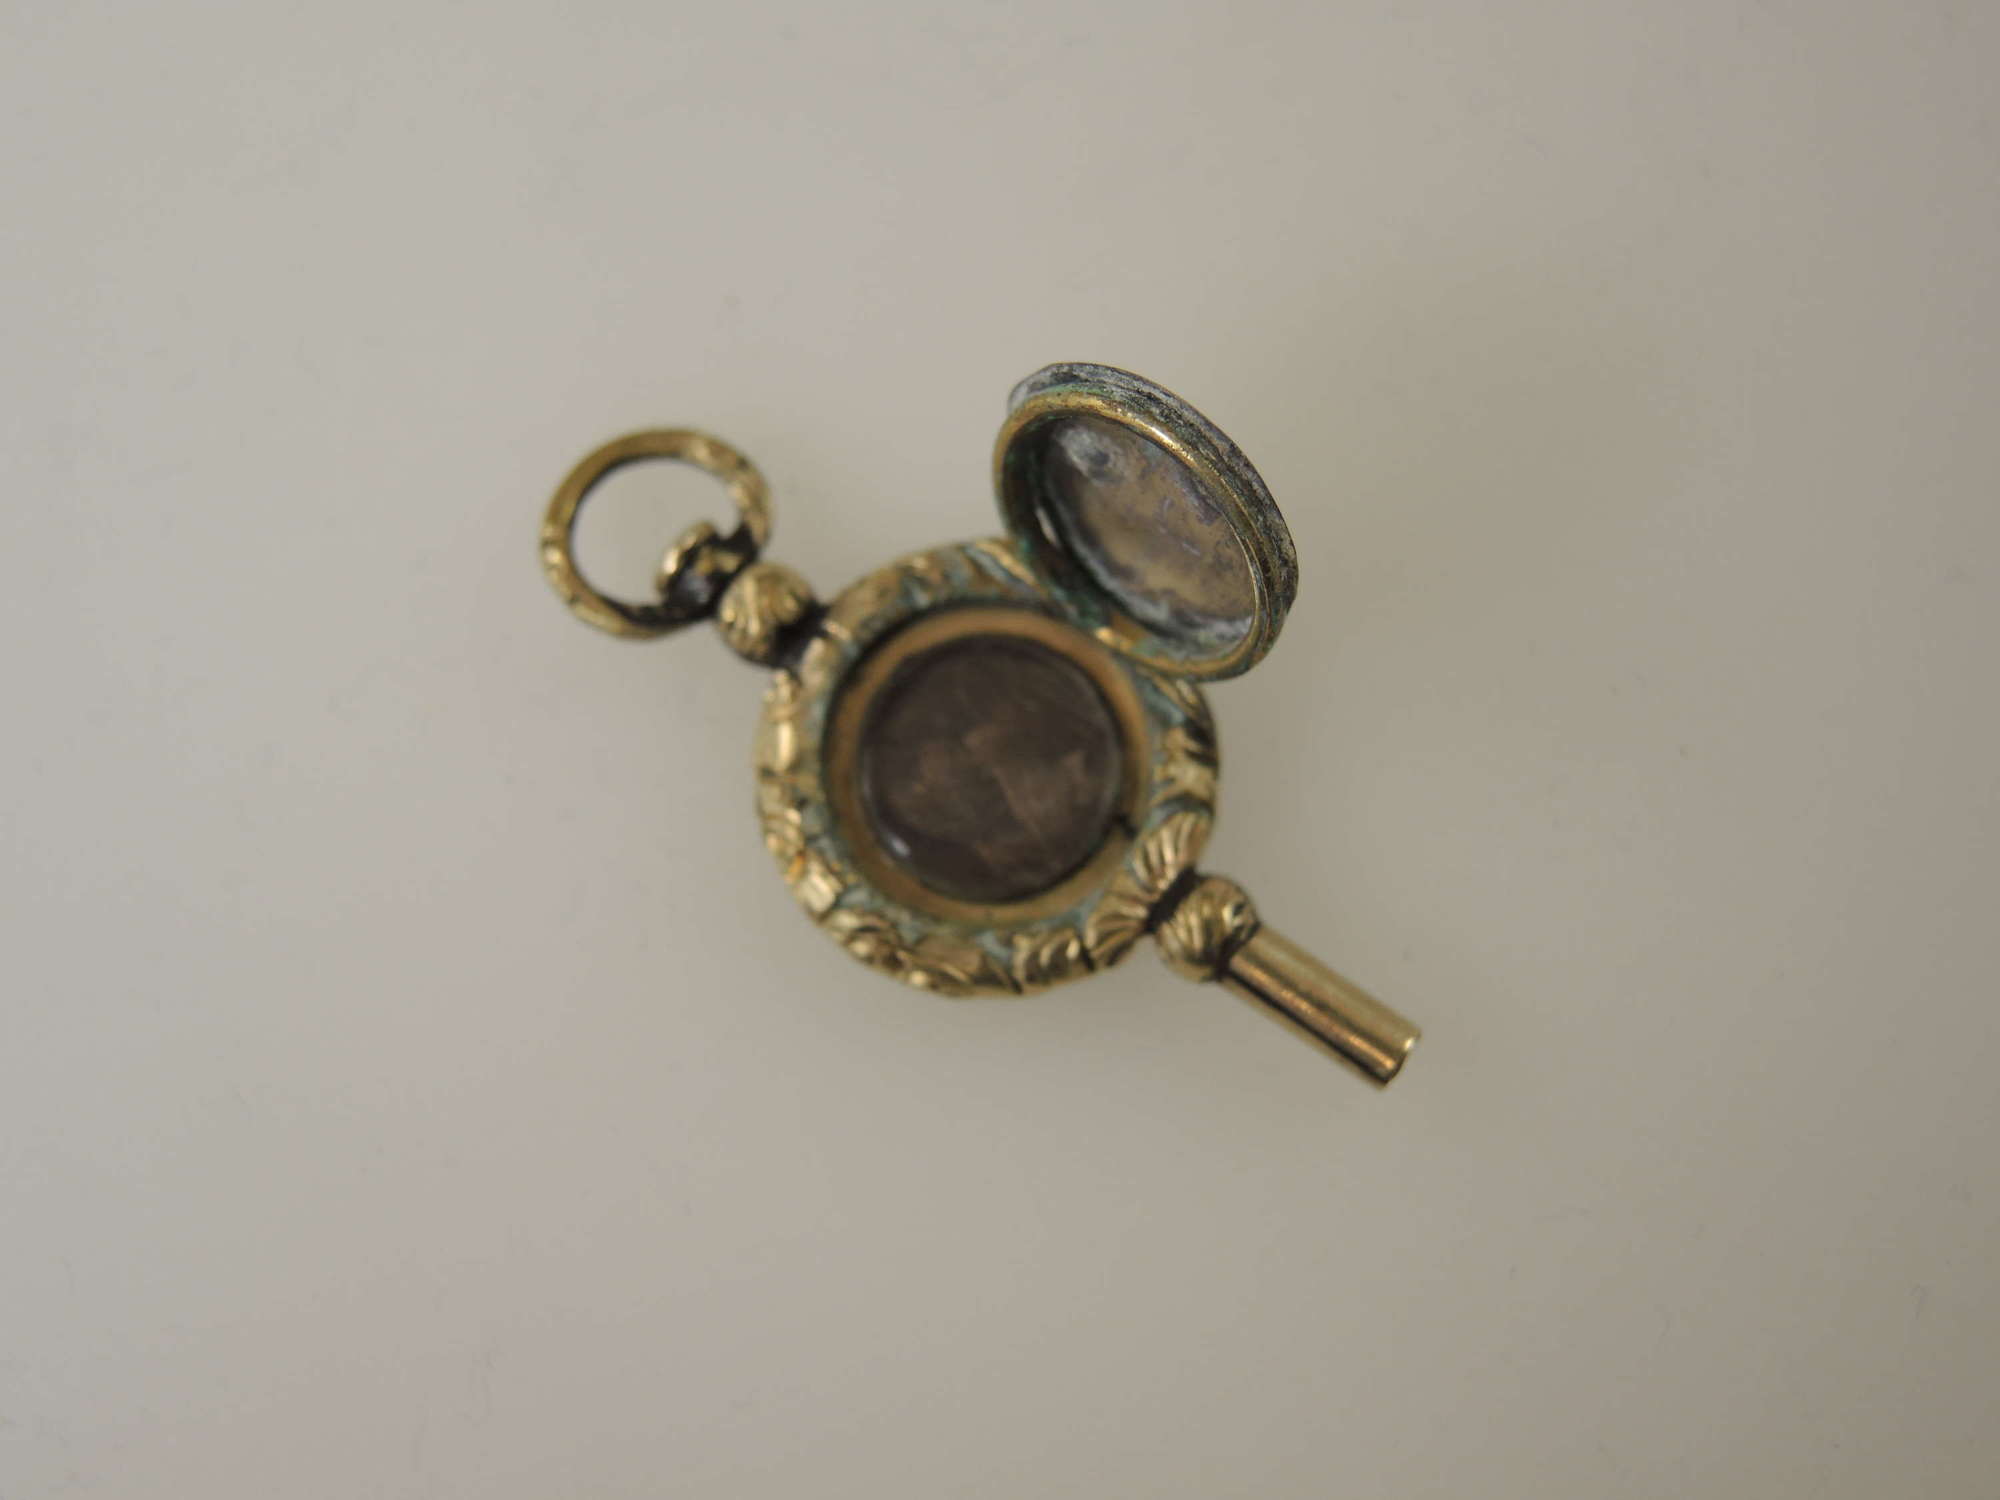 Unusual LOCKET pocket watch key c1850